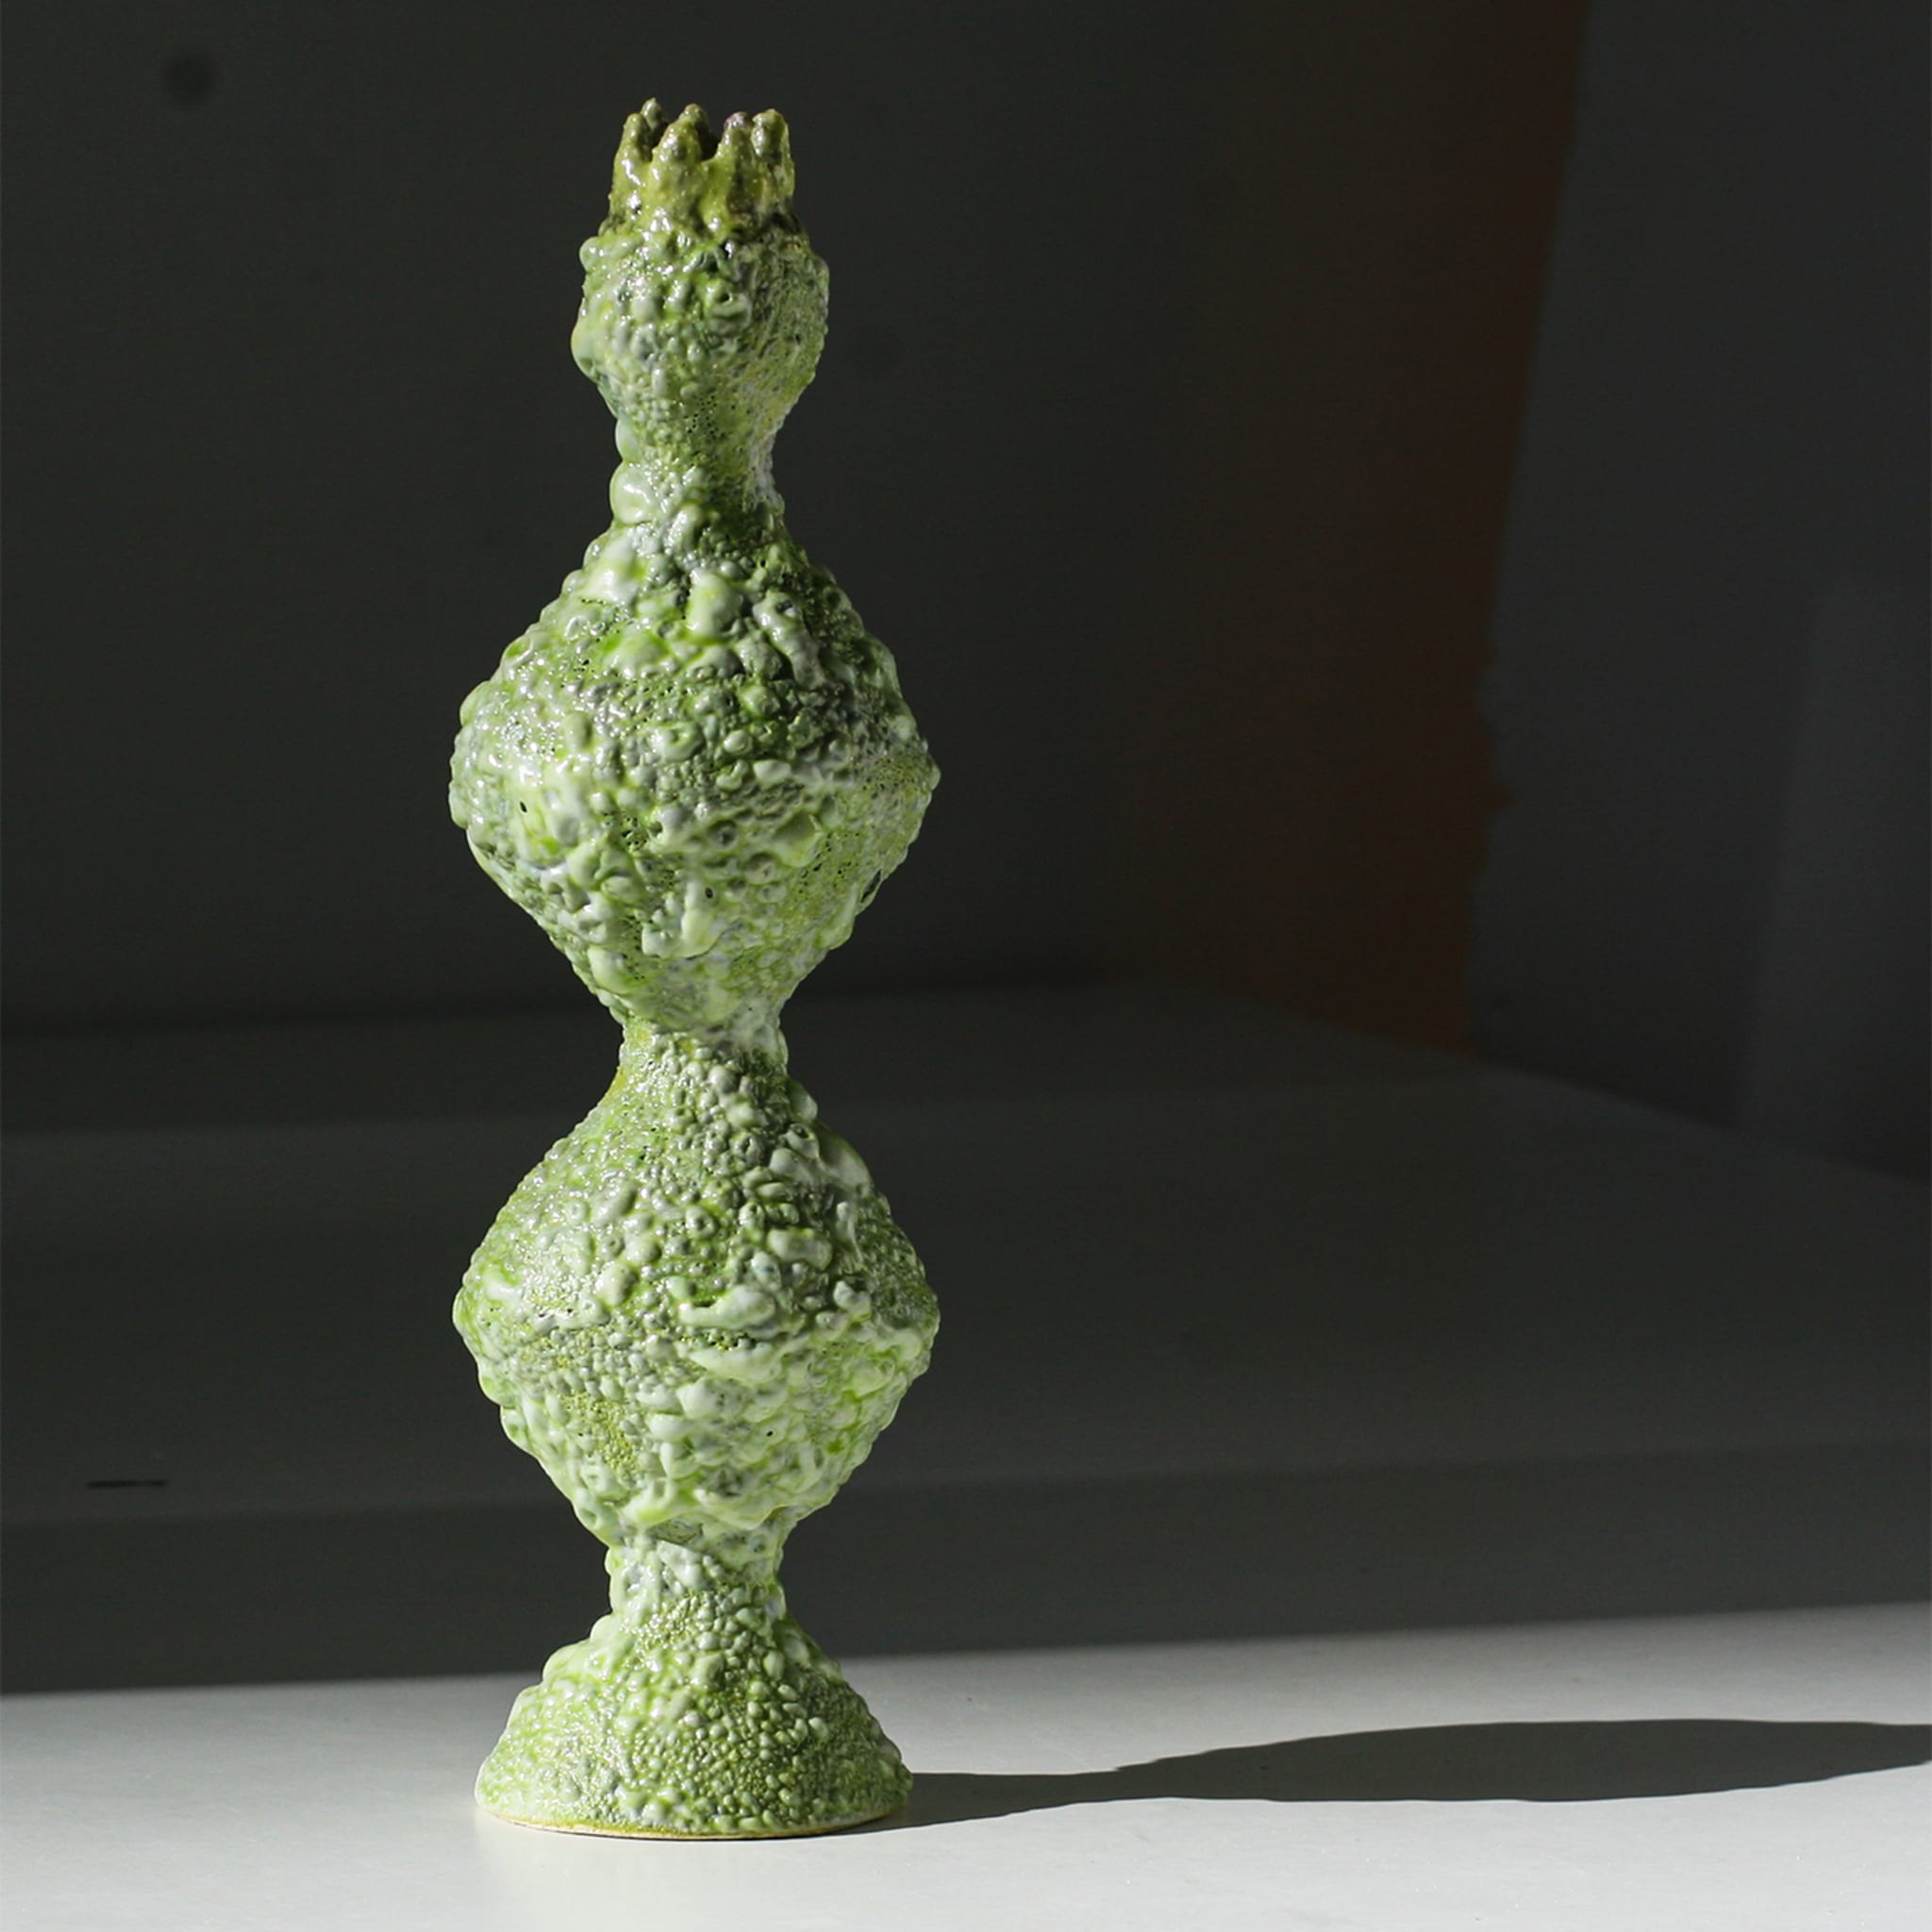 Reginetta Textured Green Bud Vase - Alternative view 2